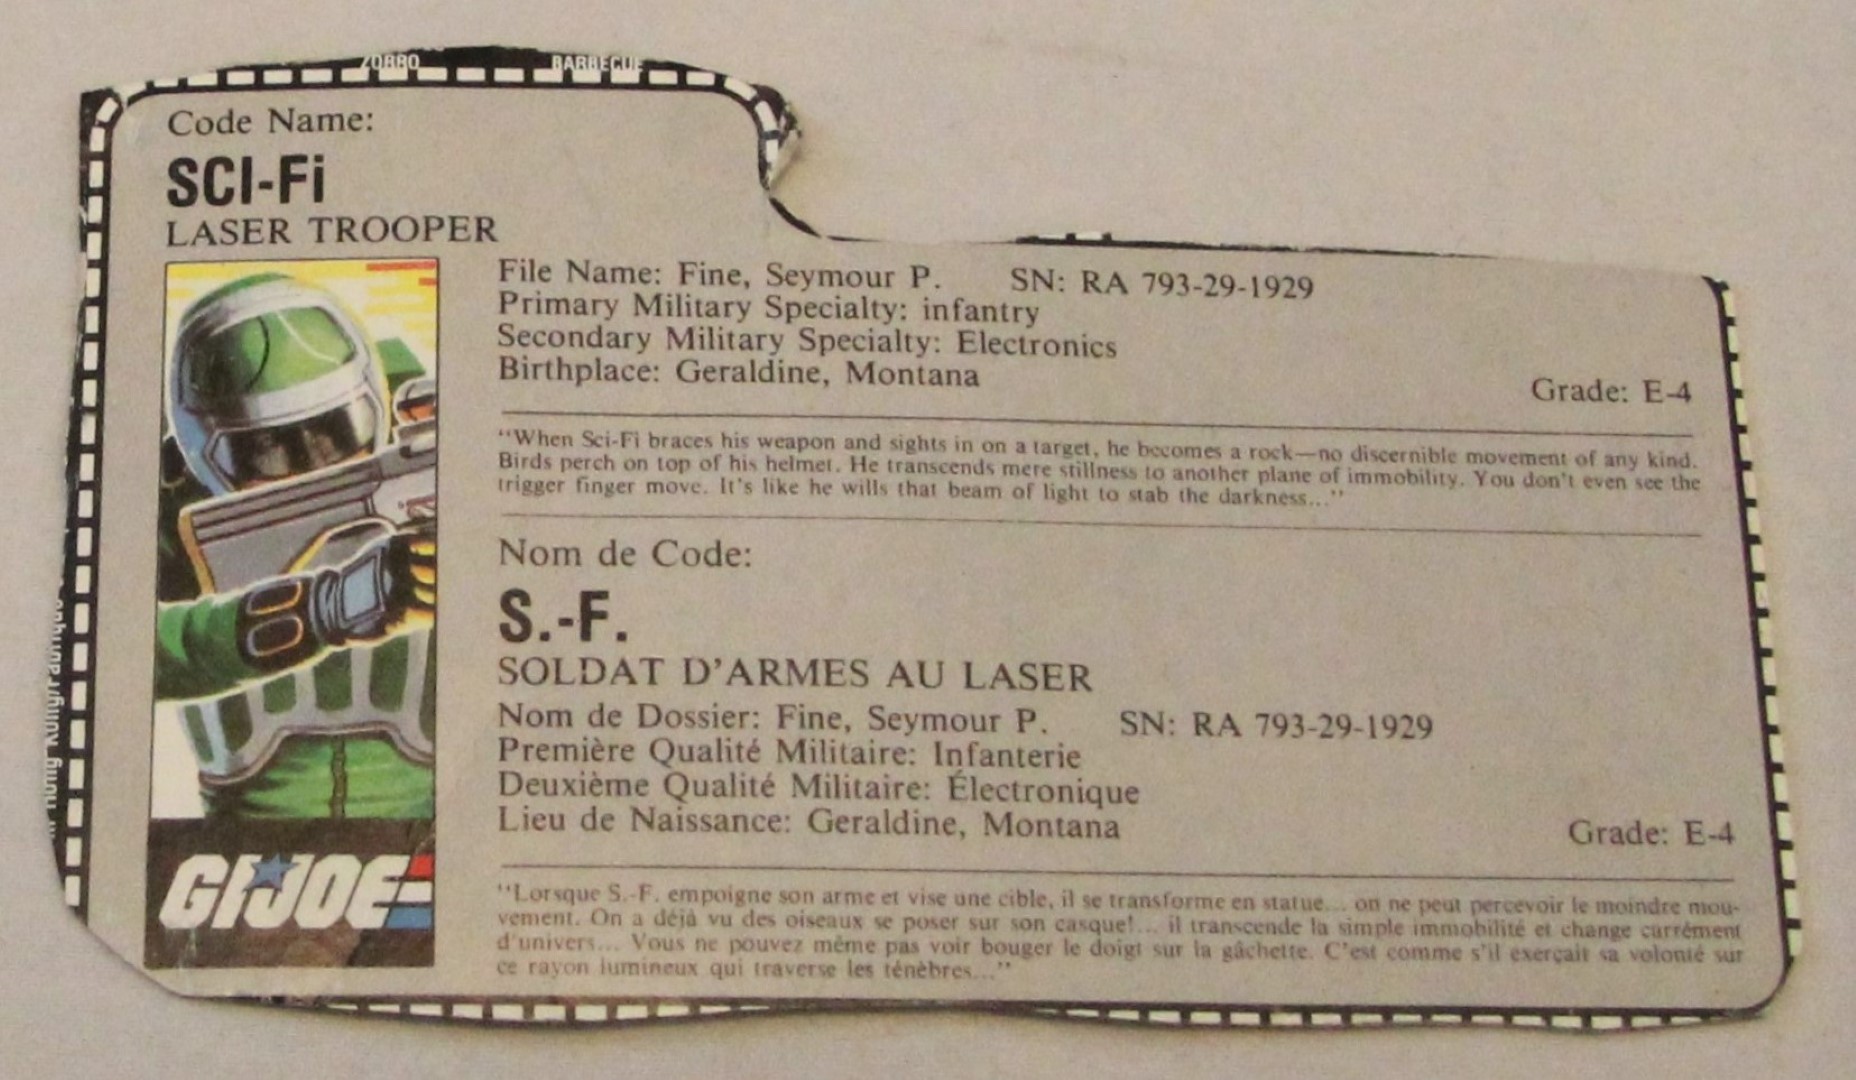 1986 sci-fi file card